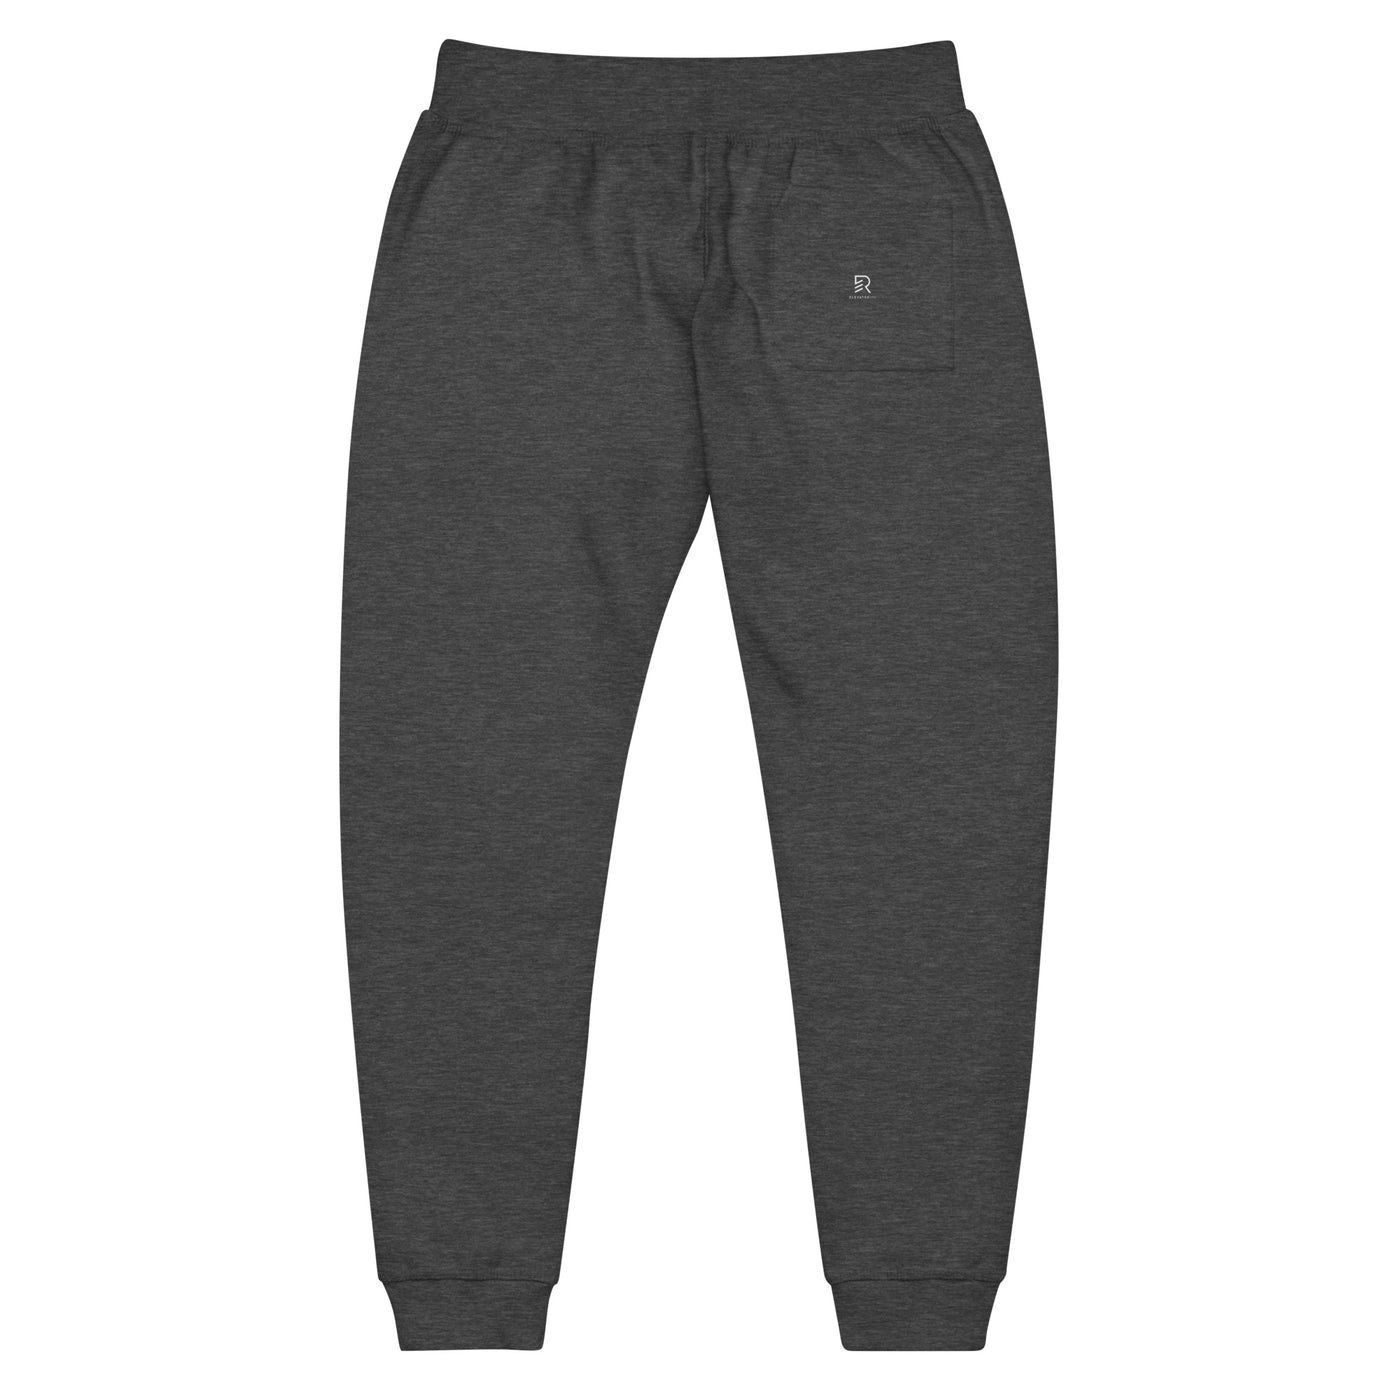 Men's Dark Gray Fleece Sweatpants - Stay Focus Get It Done